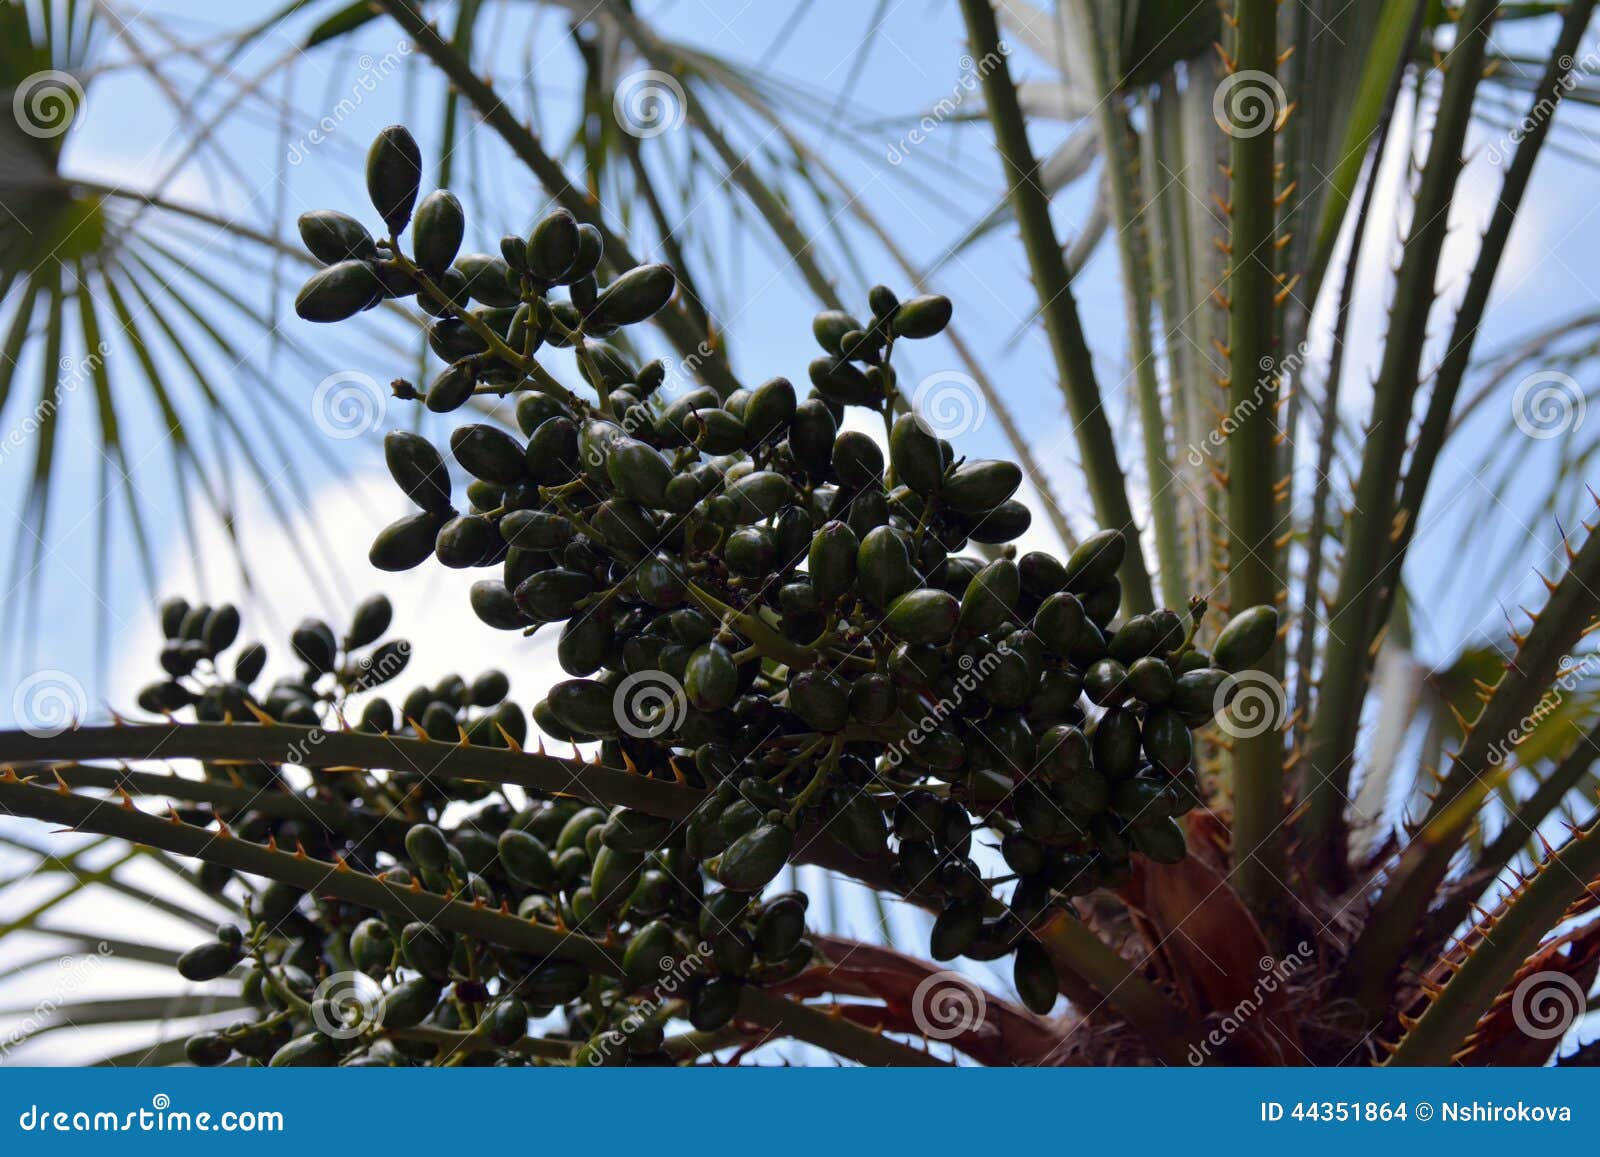 枣椰子的绿色果子在植物的